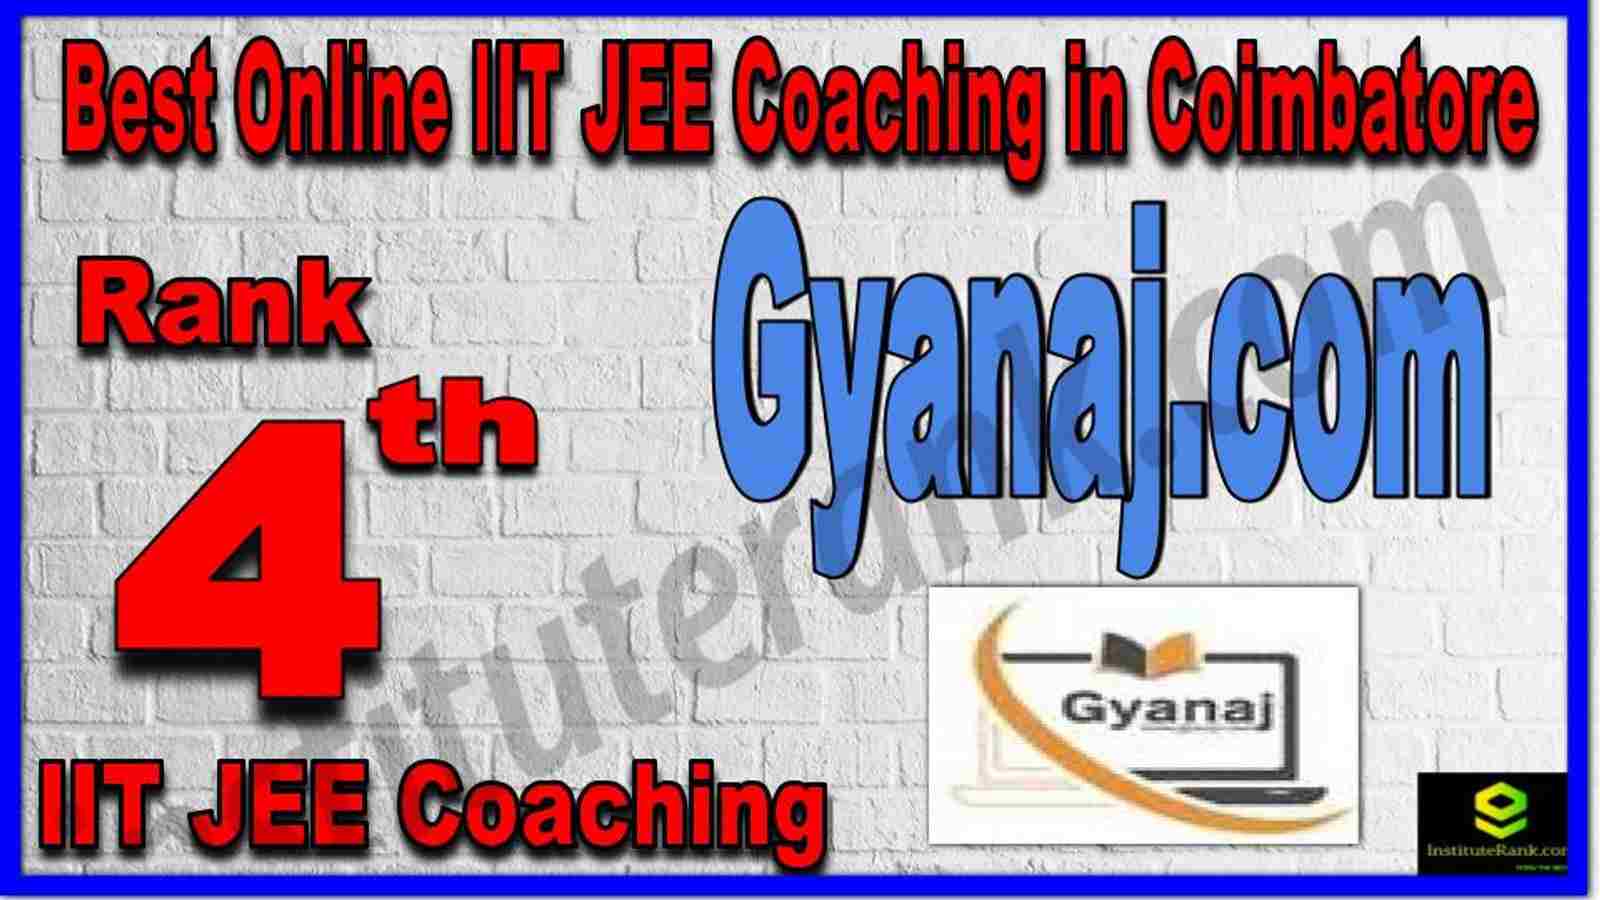 Rank 4th Best Online IIT JEE Coaching in Coimbatore